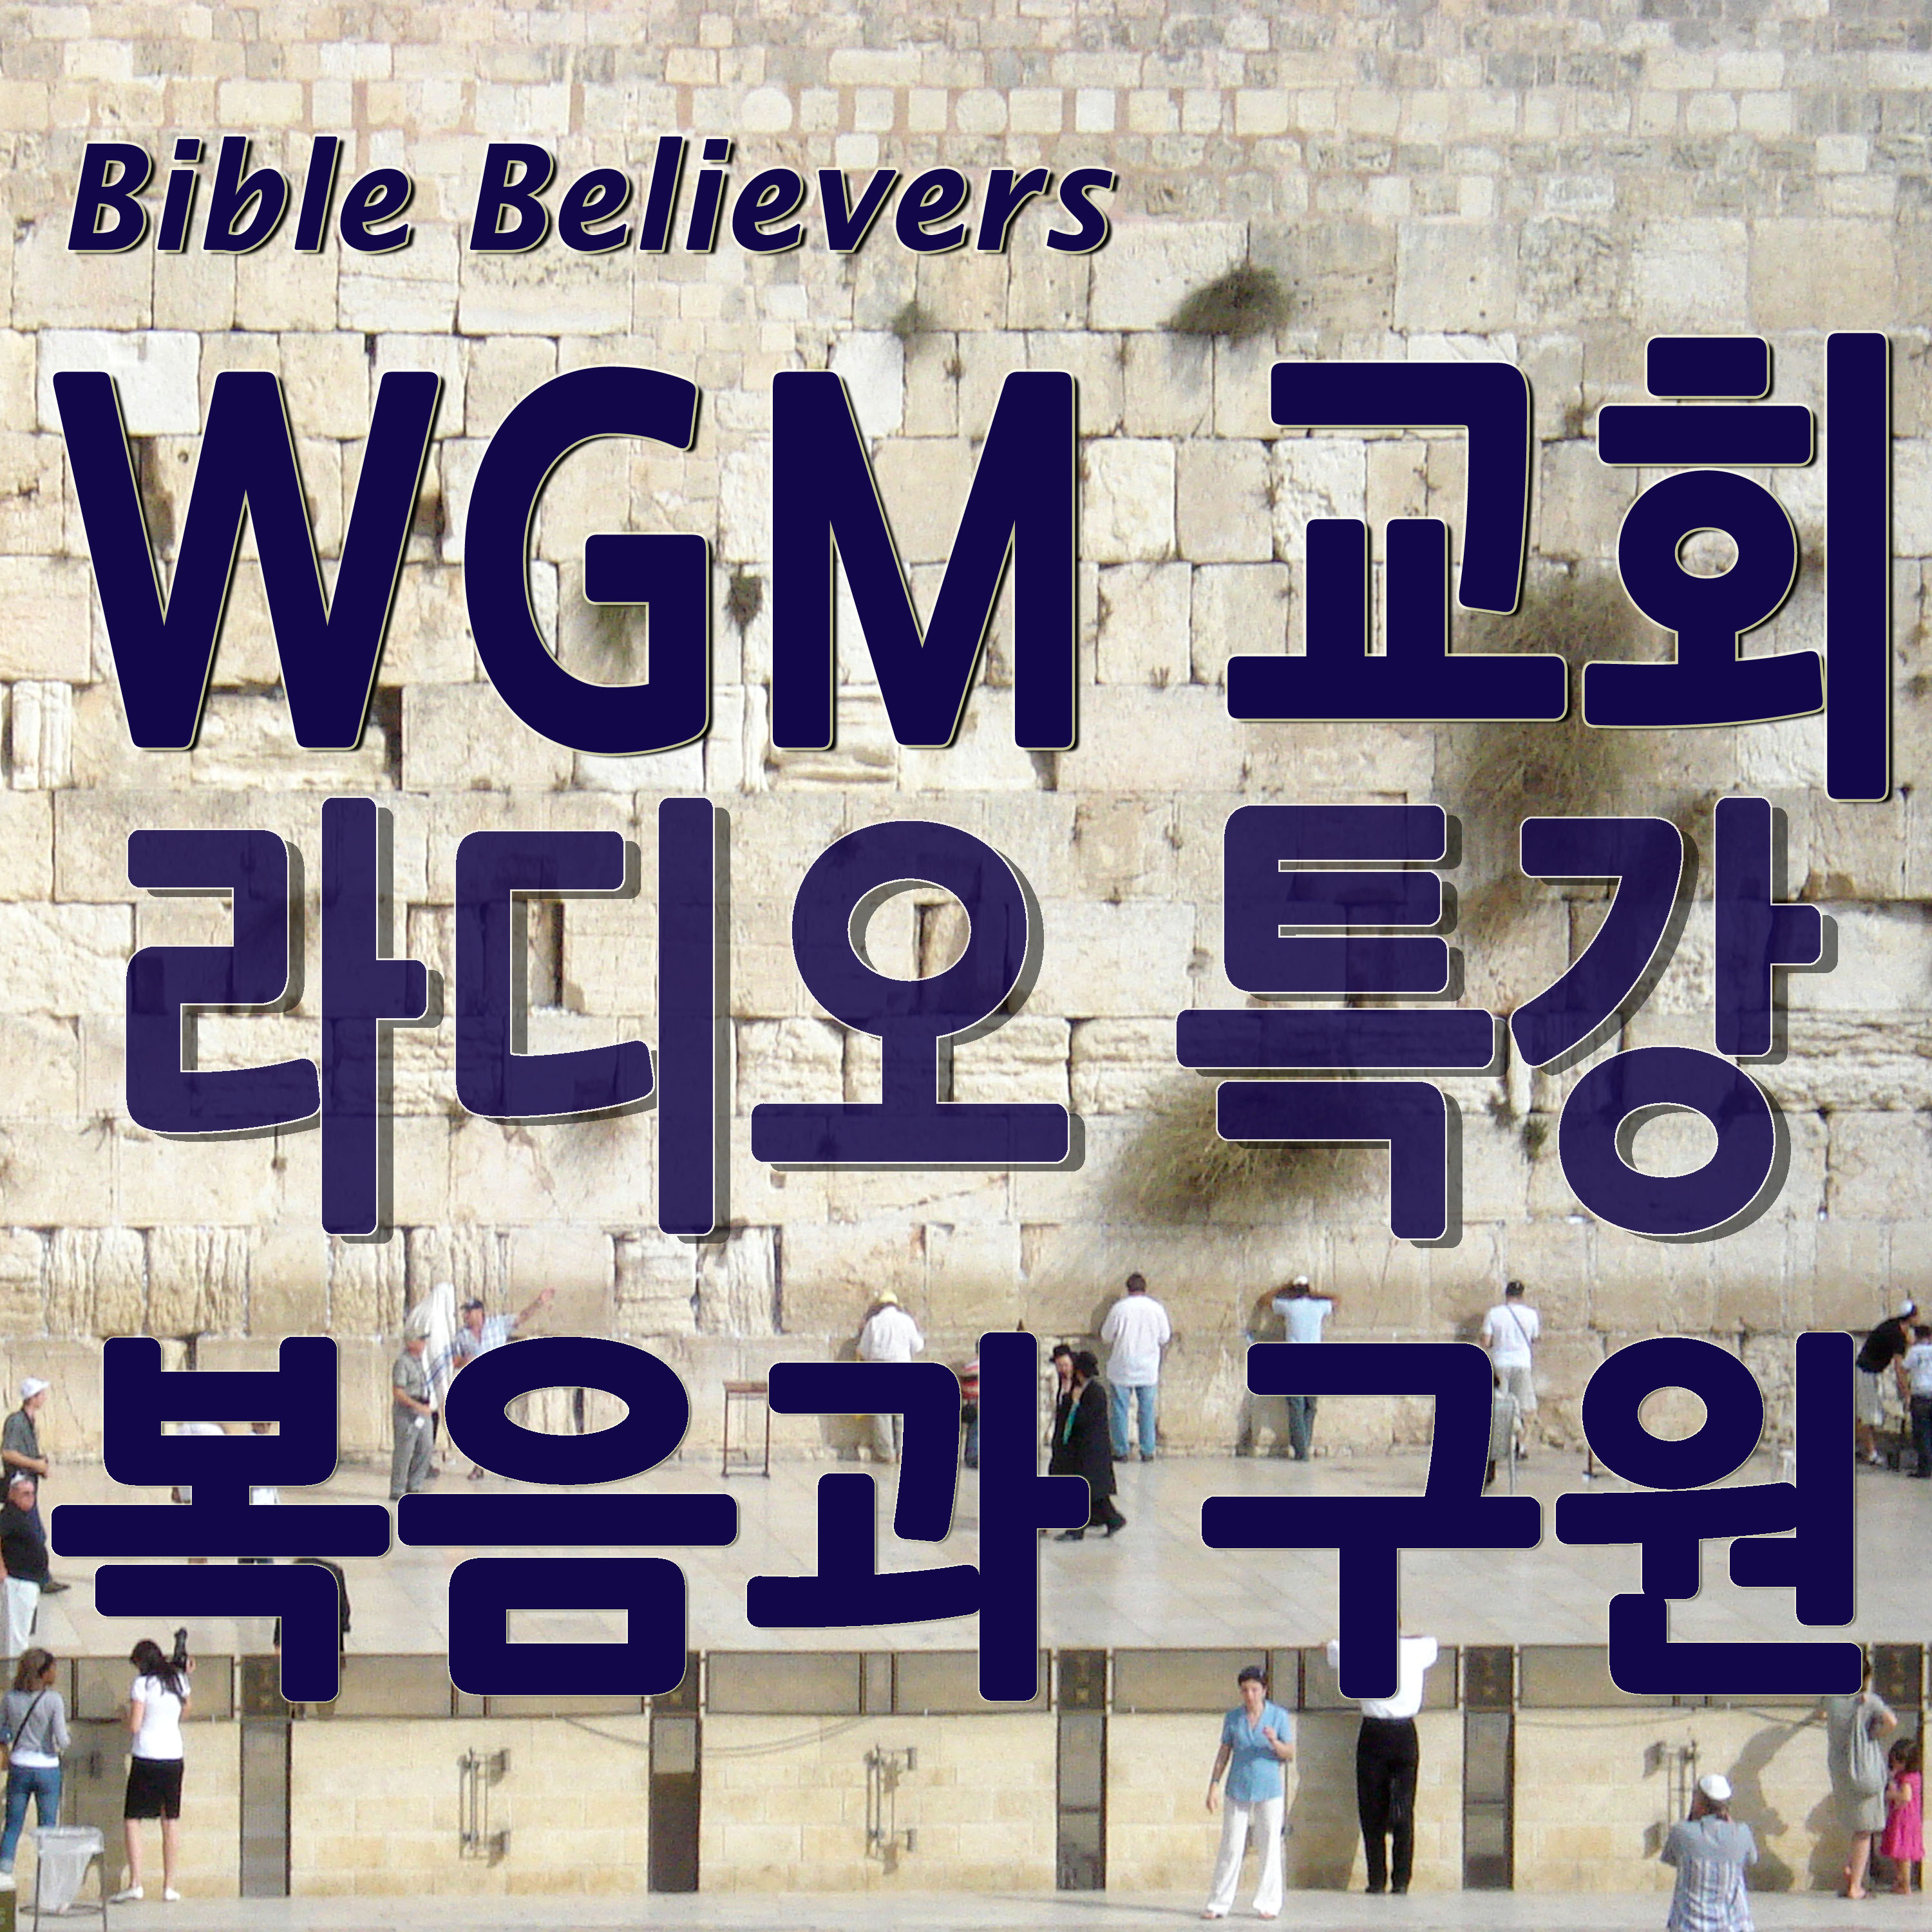 라디오 특강: 복음과 구원 - WGM Church | 온누리 복음 선교교회 | World Gospel Mission Church